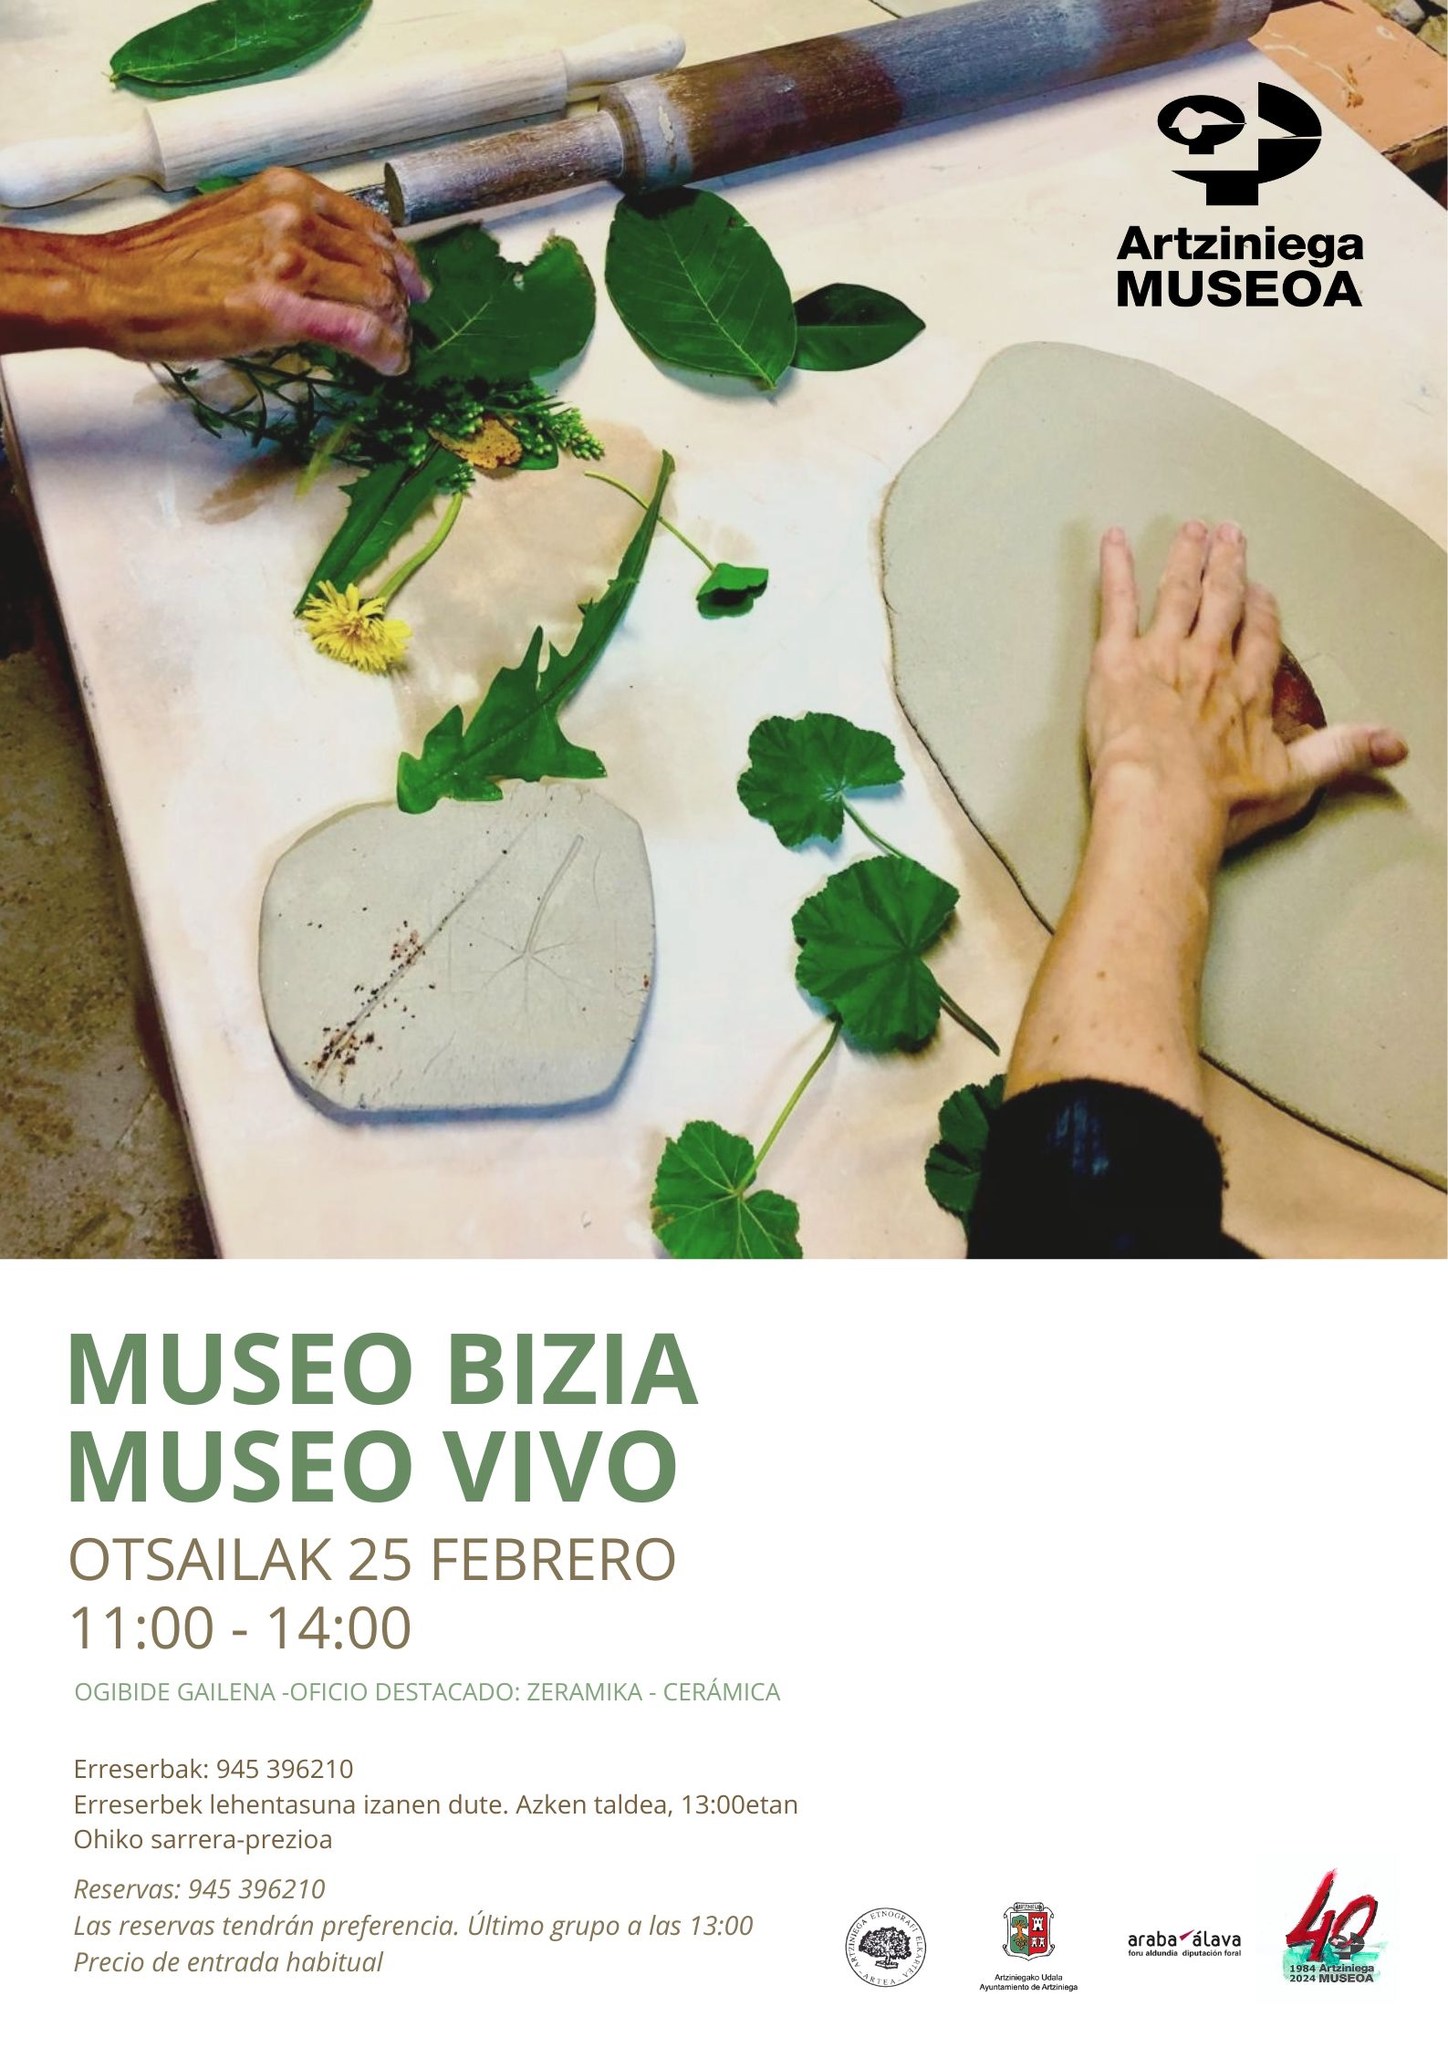 ARTZINIEGA MUSEOA: El domingo 25 de 11:00 a 14:00 pondremos el MUSEO VIVO de nuevo.